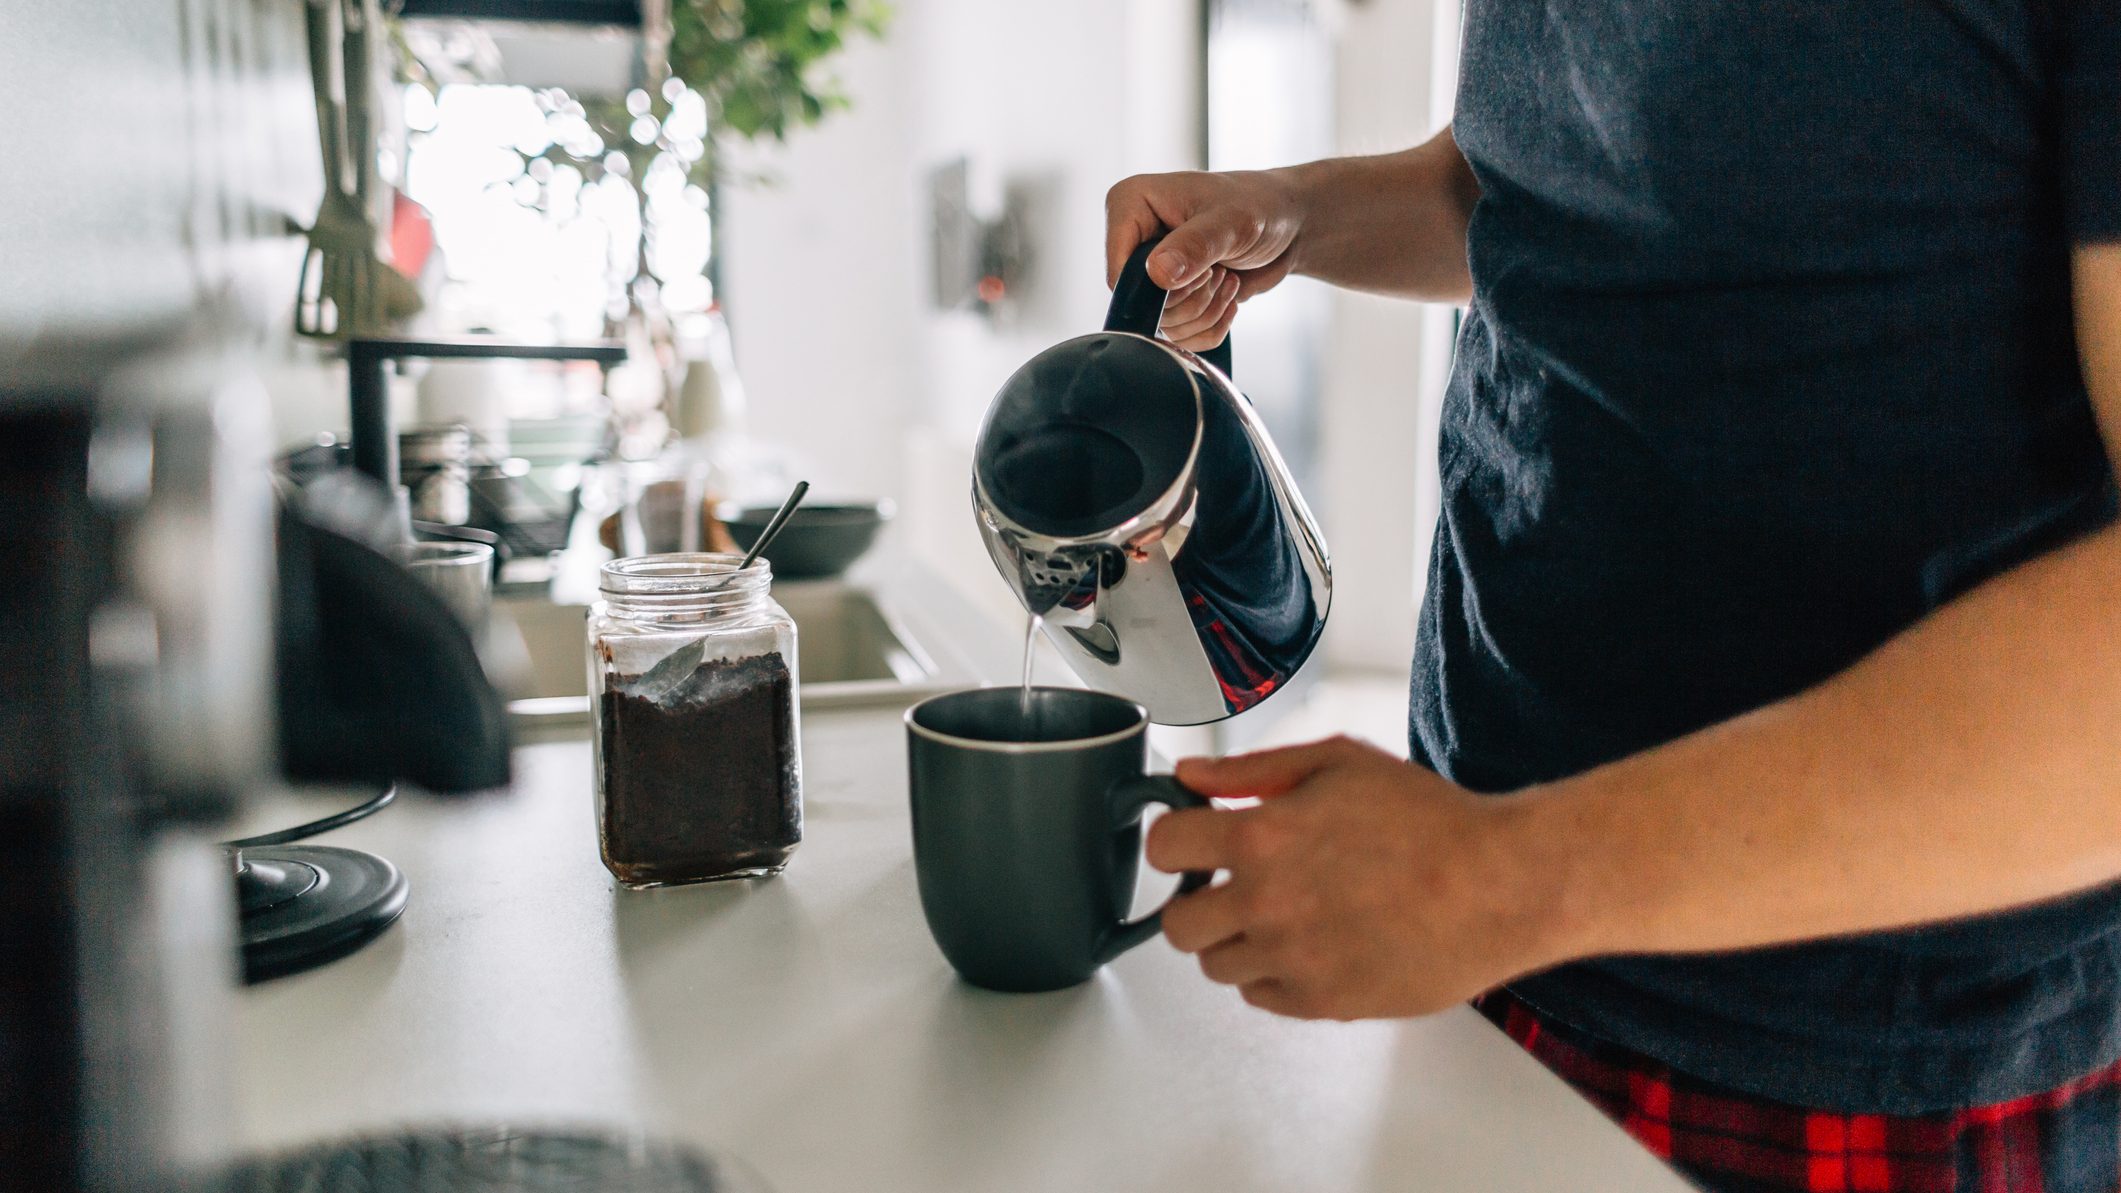 Bedste kaffetilbehør: Alt hvad du behøver for at lave kaffe derhjemme